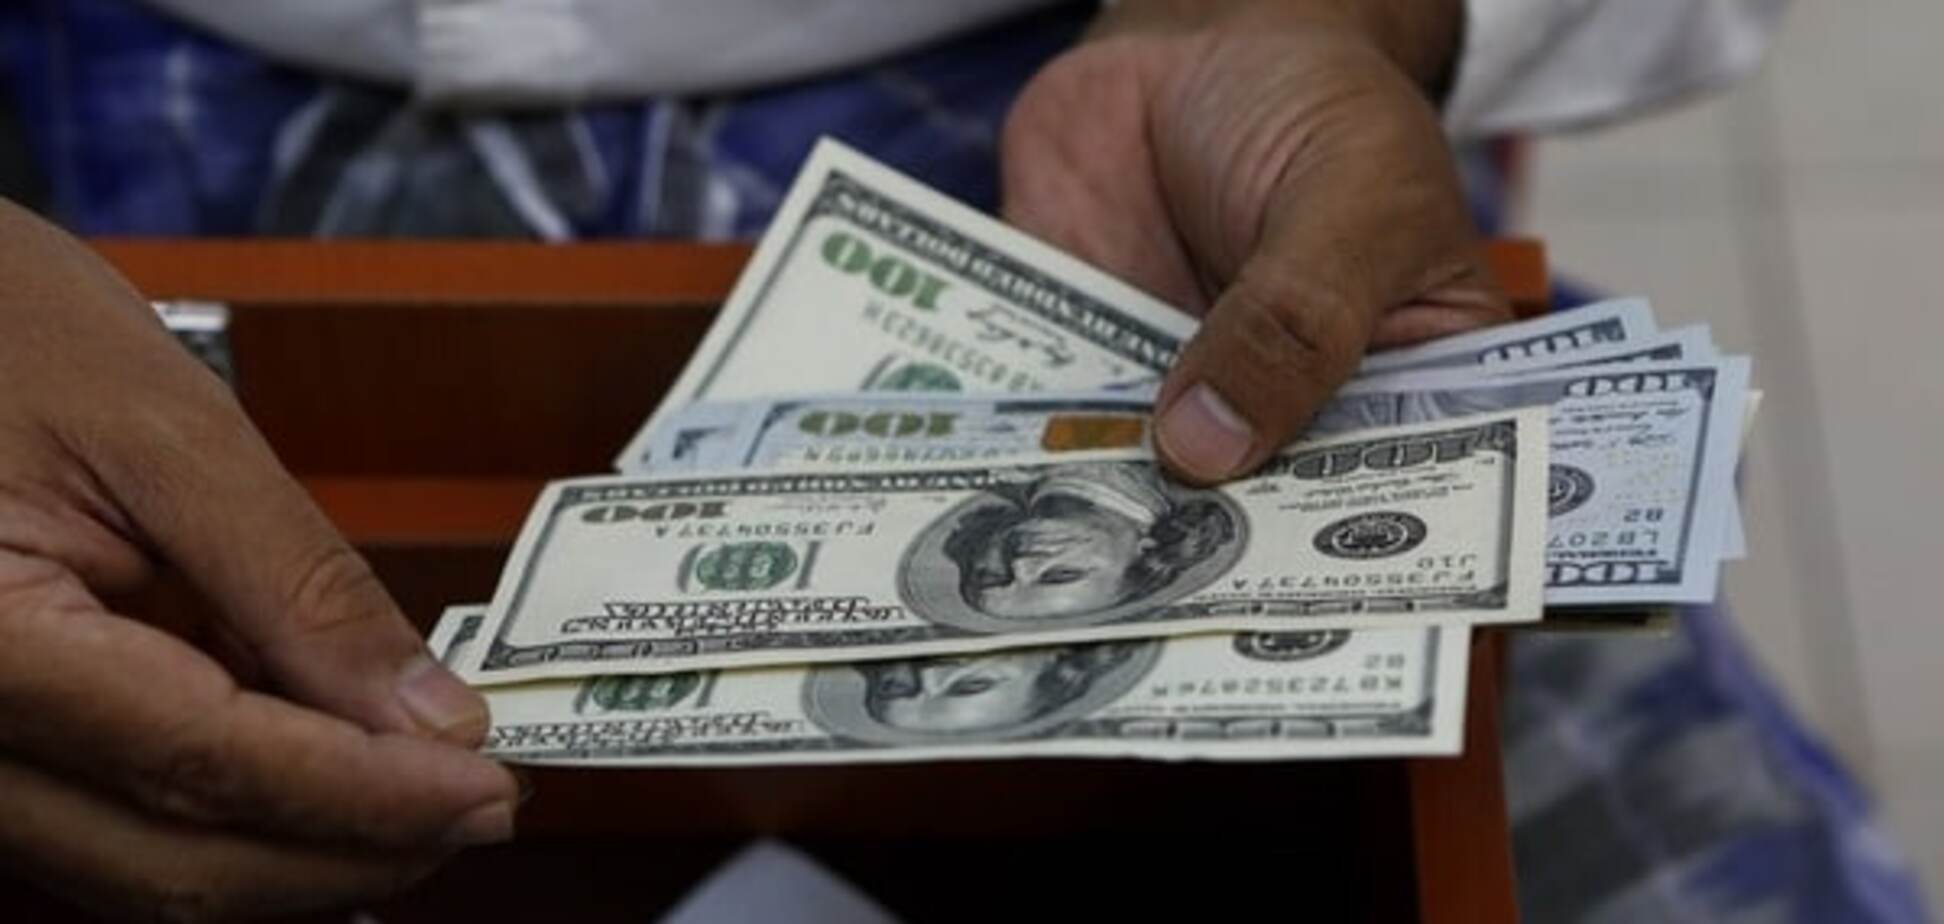 Стеля: експерти розповіли про курс долара в Україні до березня